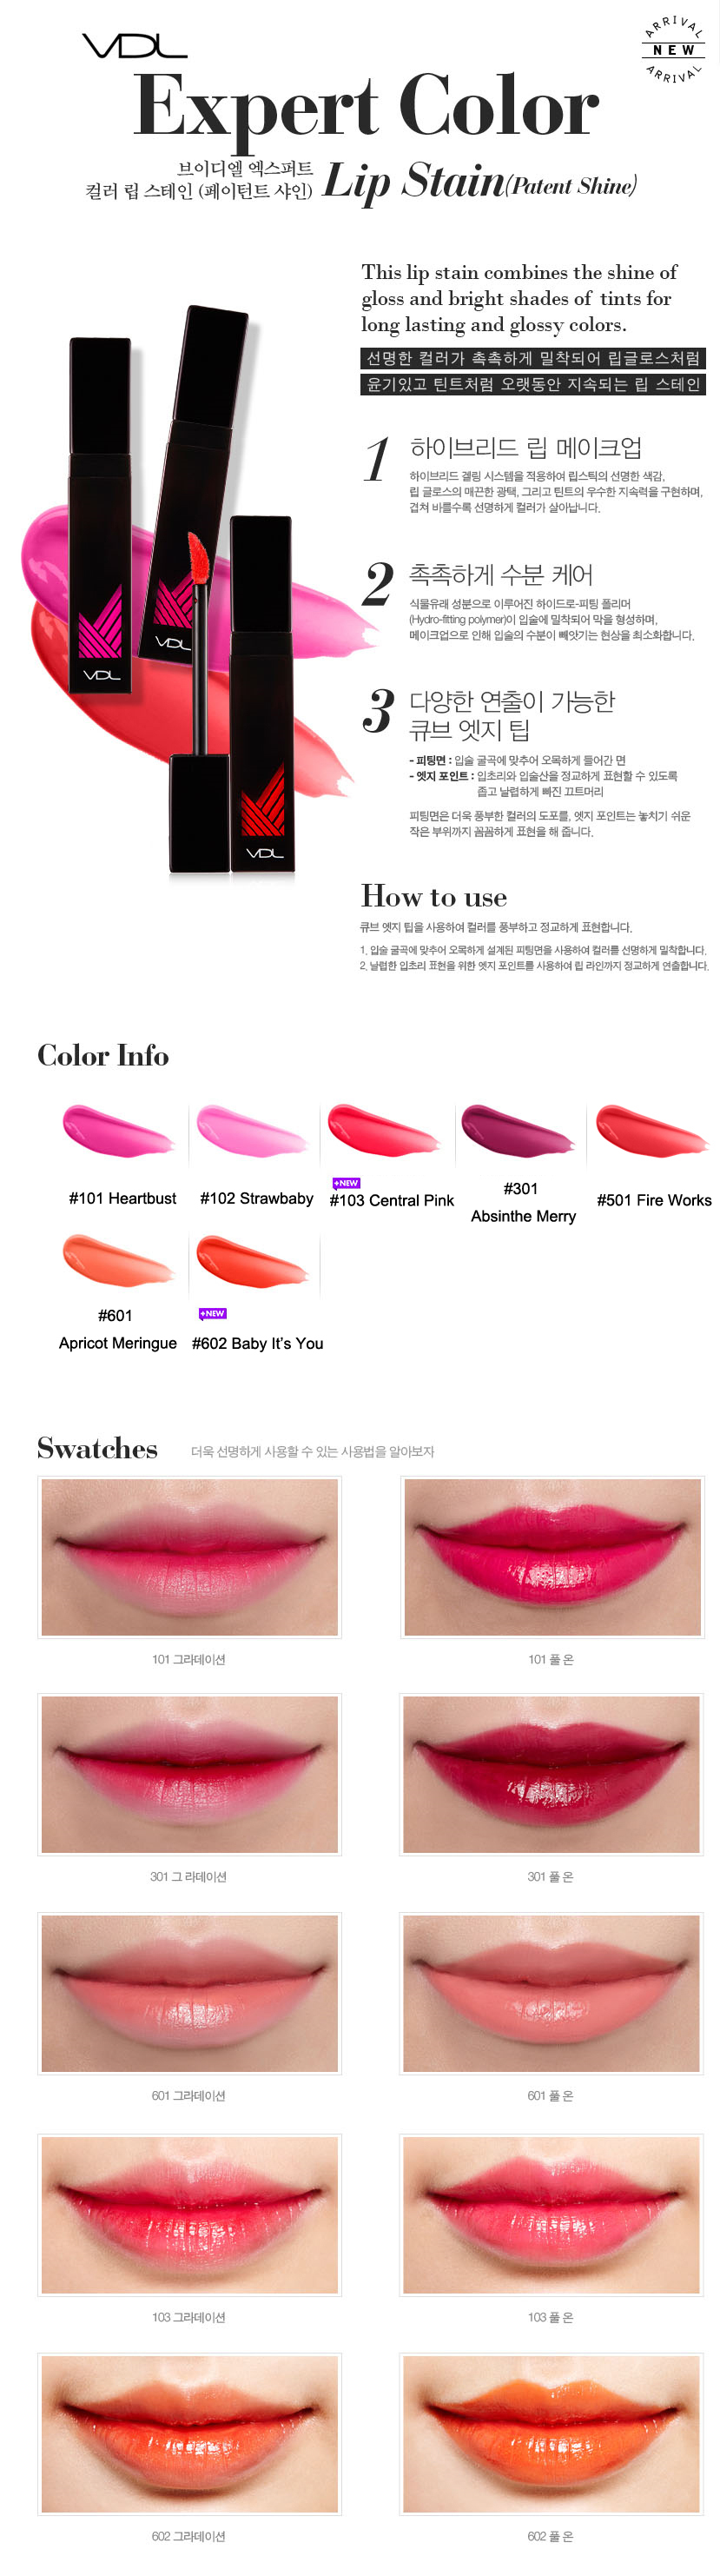 vdl-expert-color-lip-stain-1.jpg